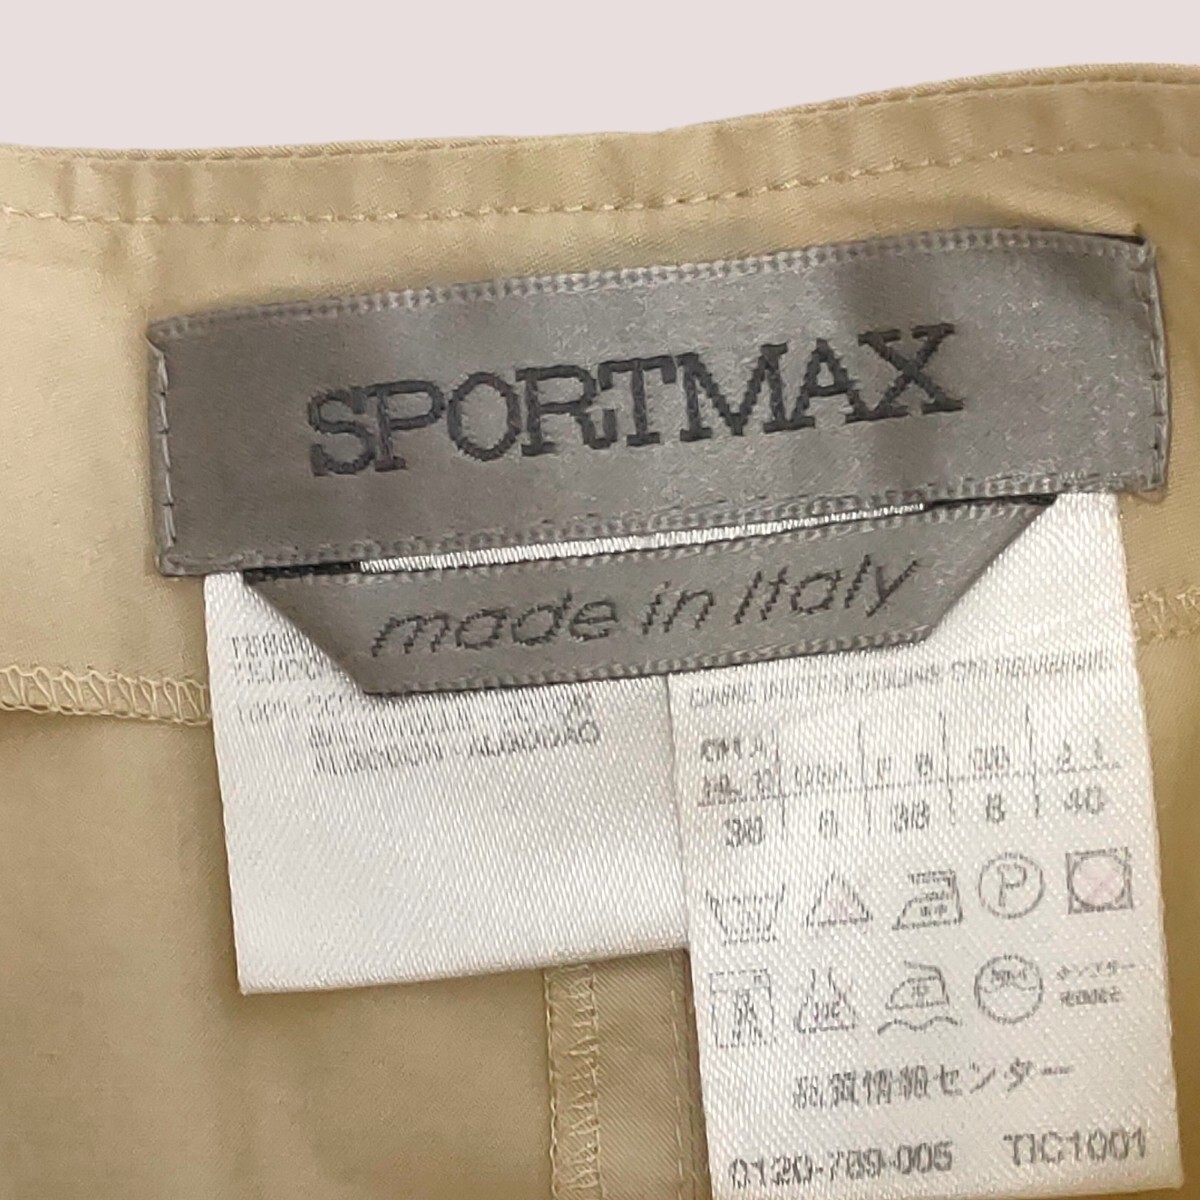 【イタリア製】SPORTMAX / スポーツマックス レディース フレア スカート アイボリー 40(L) ミモレ丈 I-3666の画像3